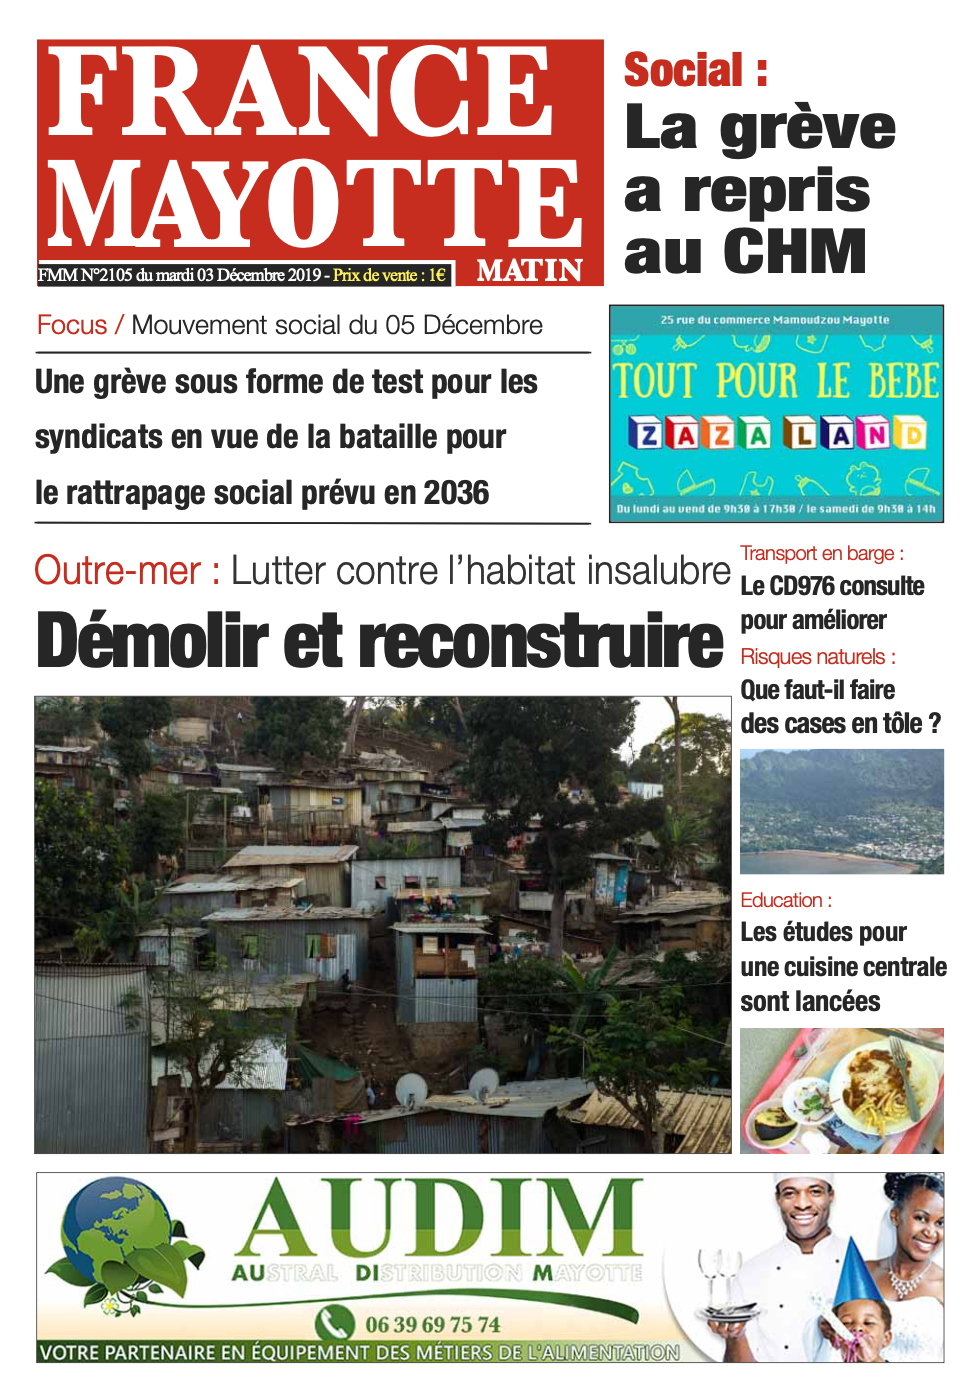 France Mayotte Mardi 3 décembre 2019